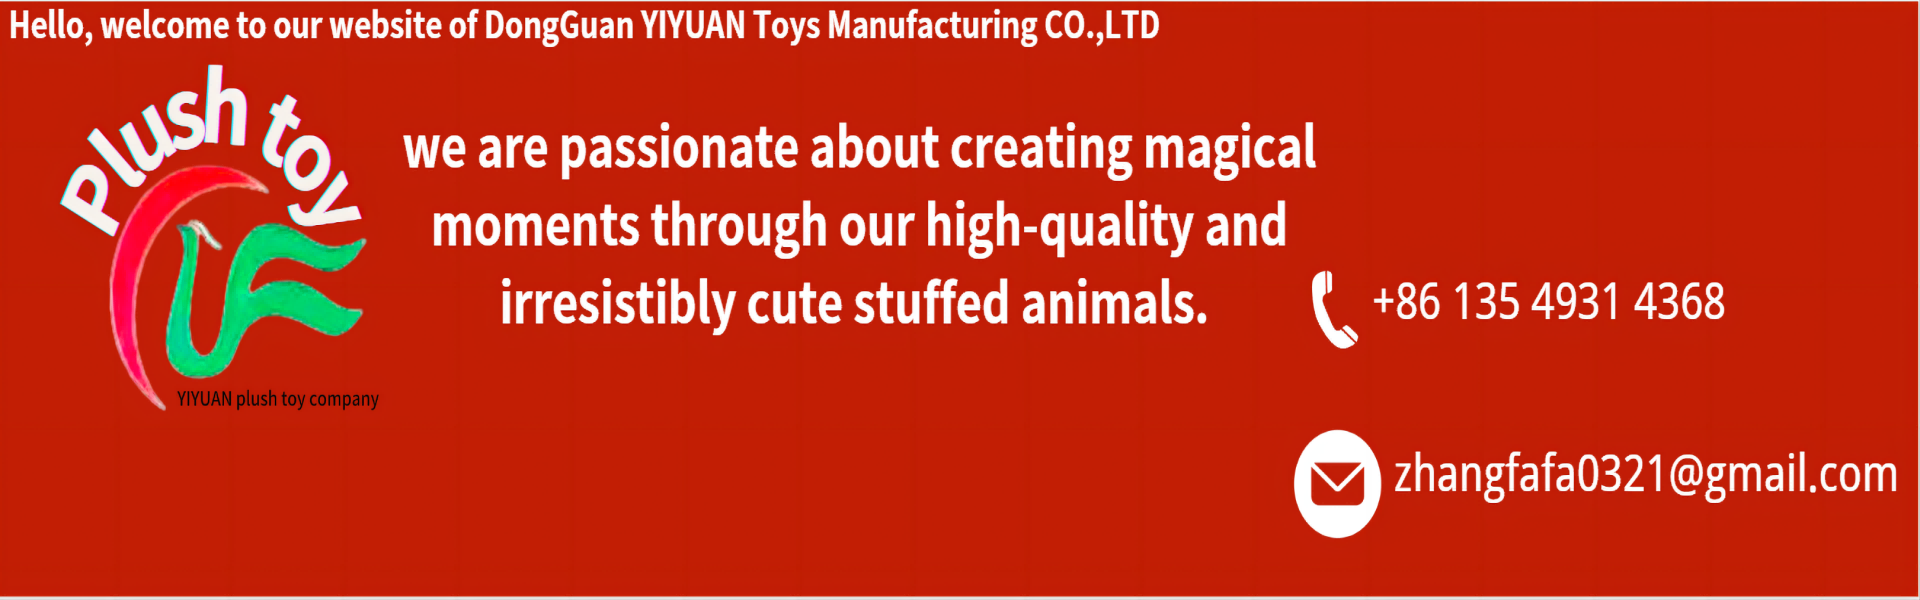 ของเล่นตุ๋น, ทีมงานคุณภาพสูง, มืออาชีพ,yiyuan plush toy company